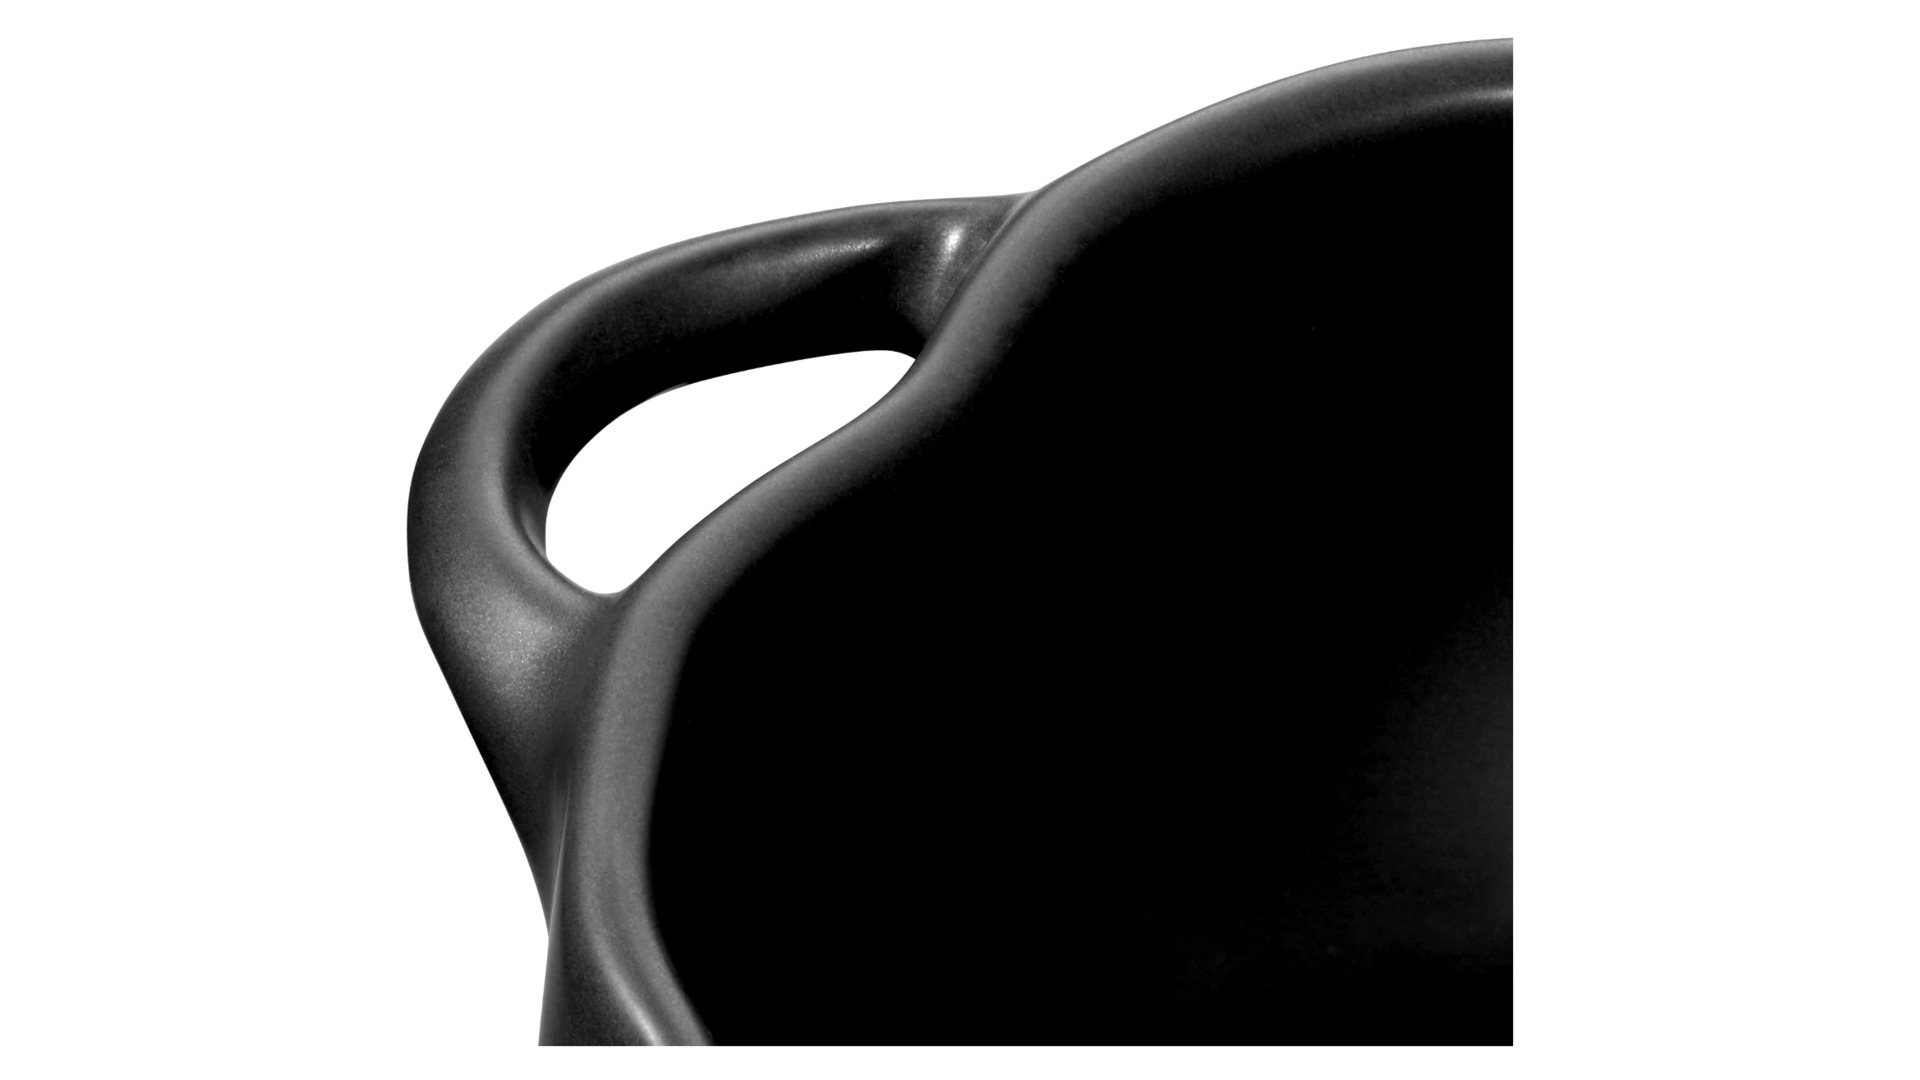 Кокот Staub Тыква 12,2 см, керамика, черный, для СВЧ, духовки